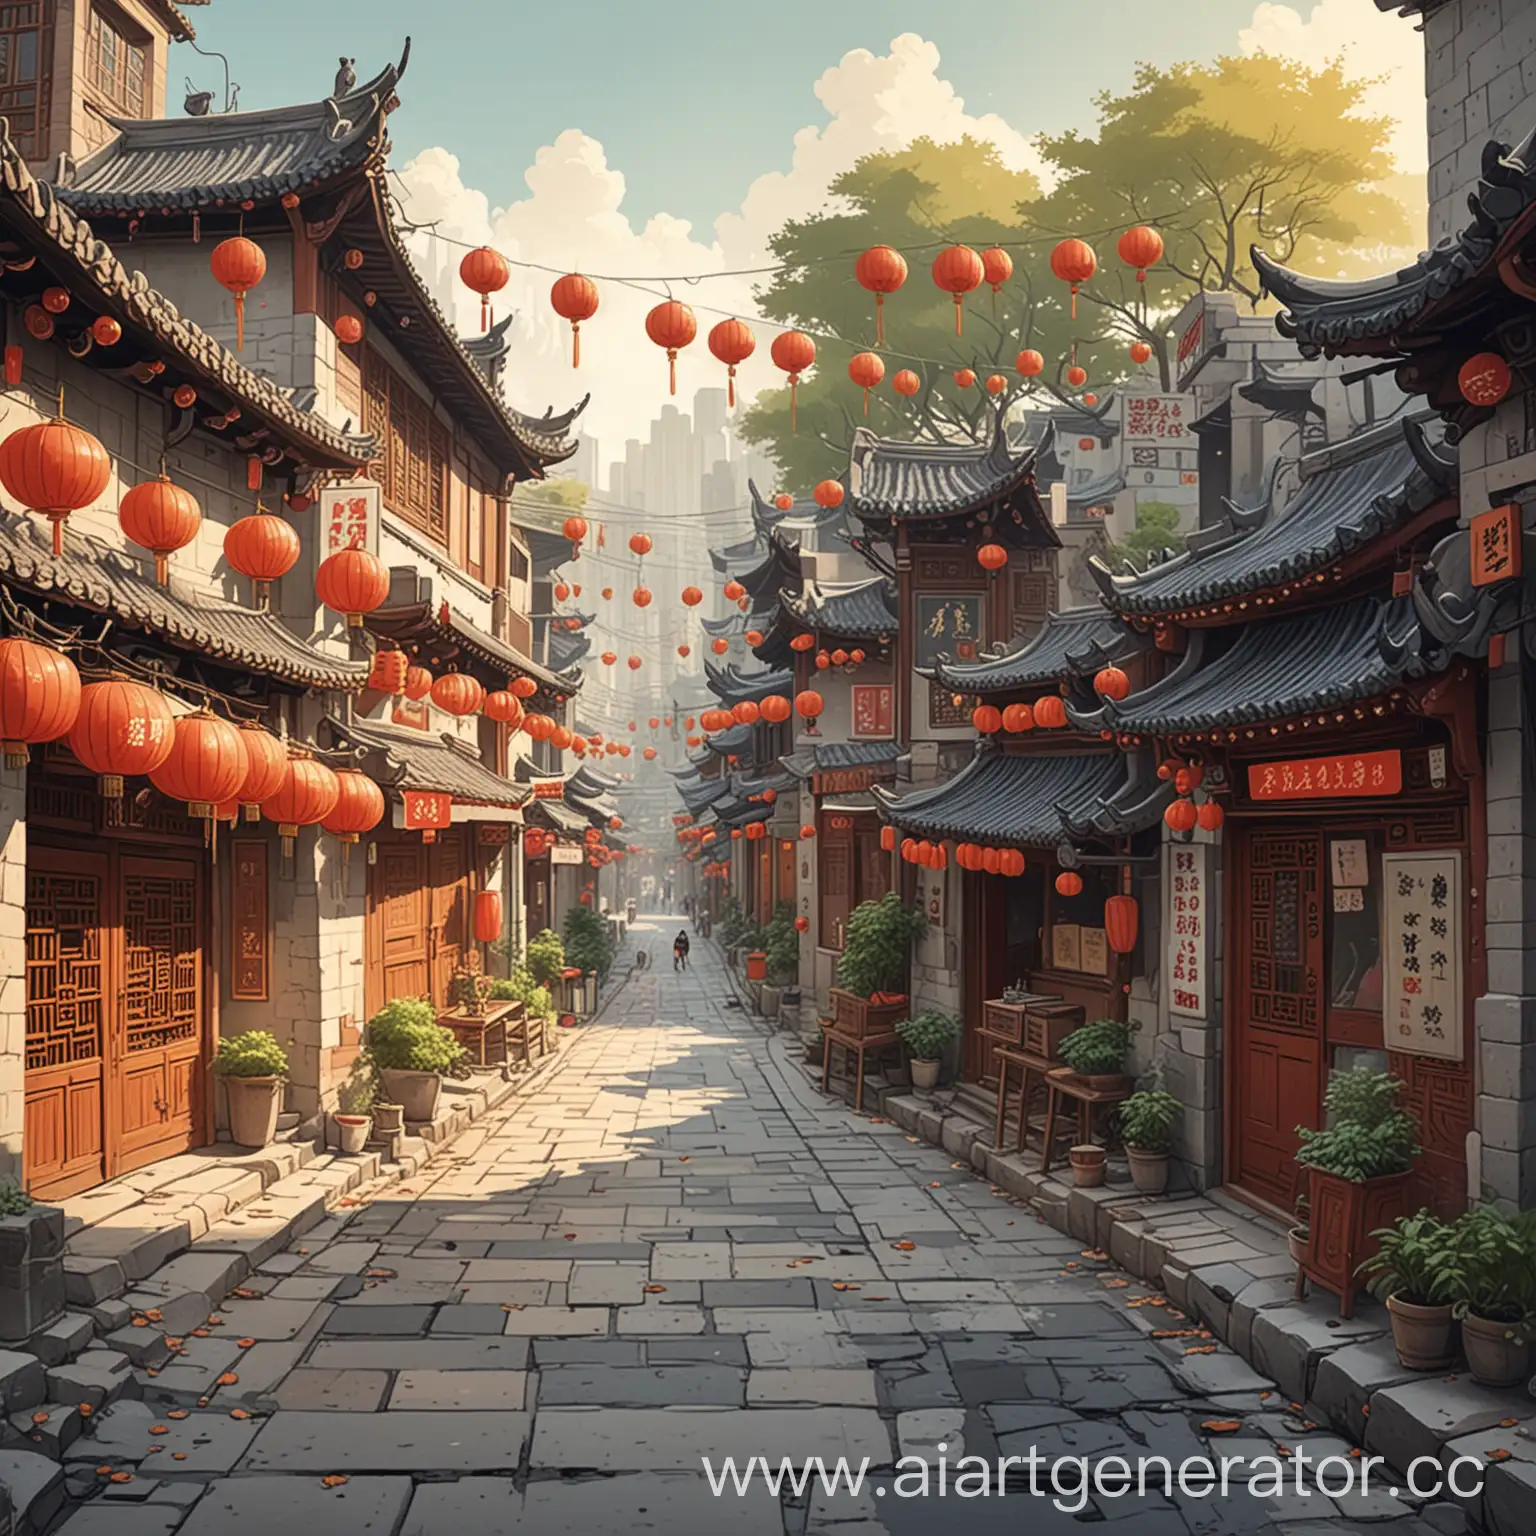 улица в китае нарисованная в мультяшном стиле